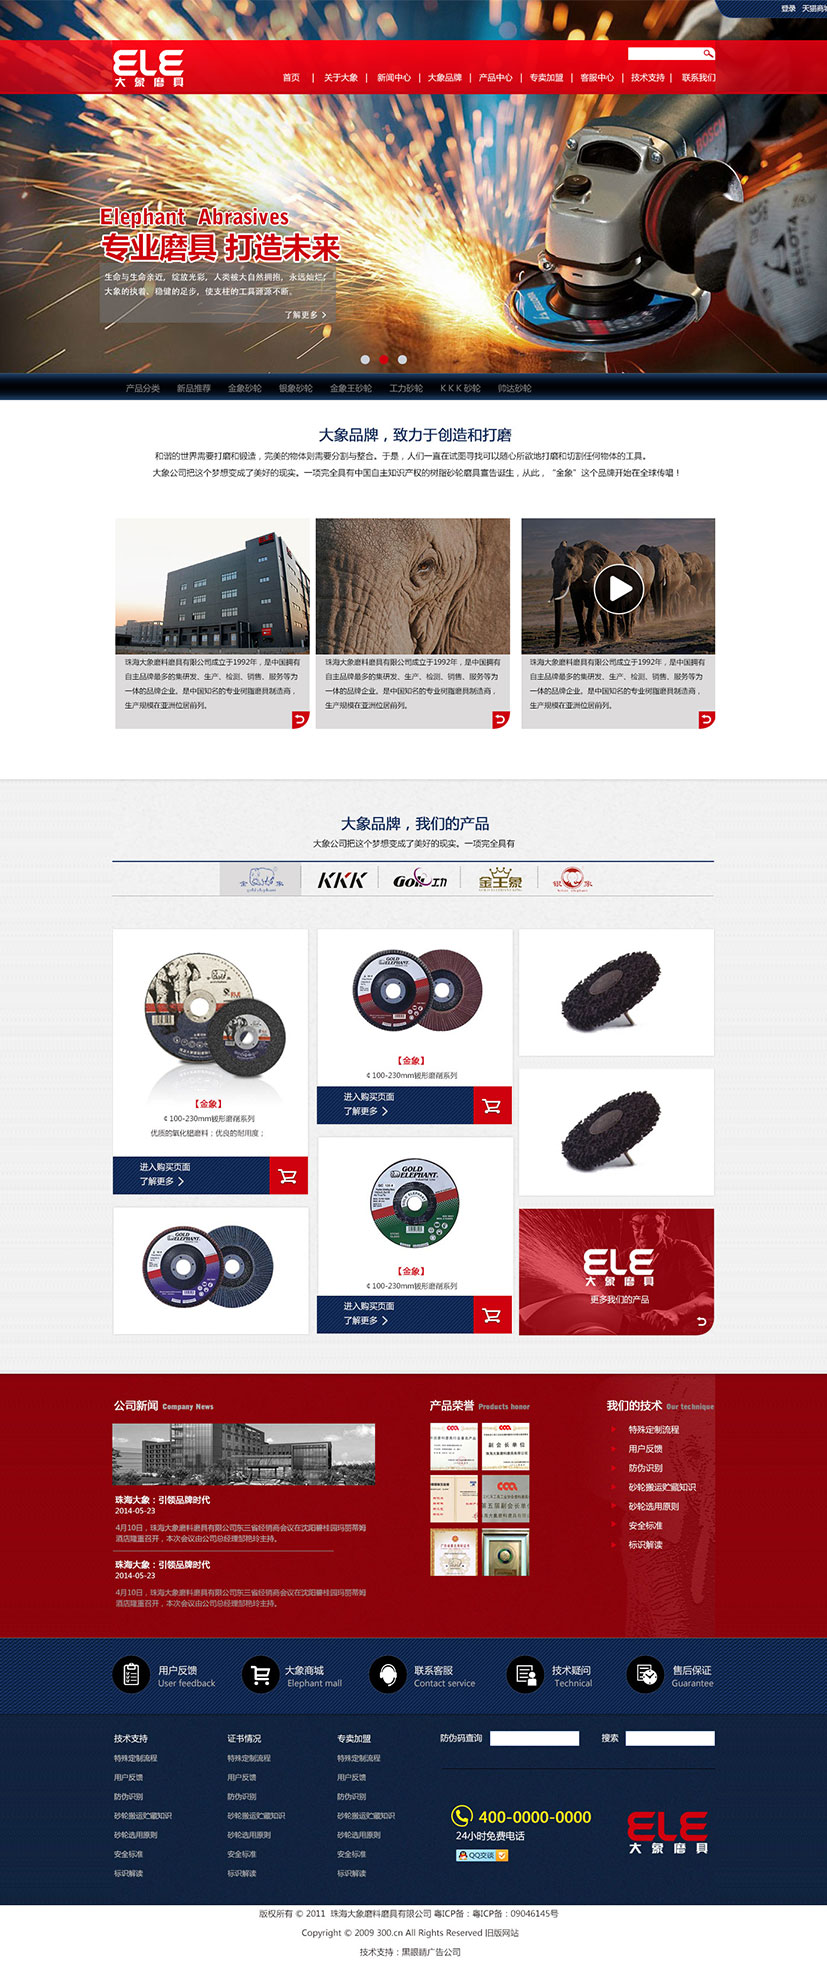 黑眼睛广告为珠海大象磨料磨具有限公司设计的中文官网首页